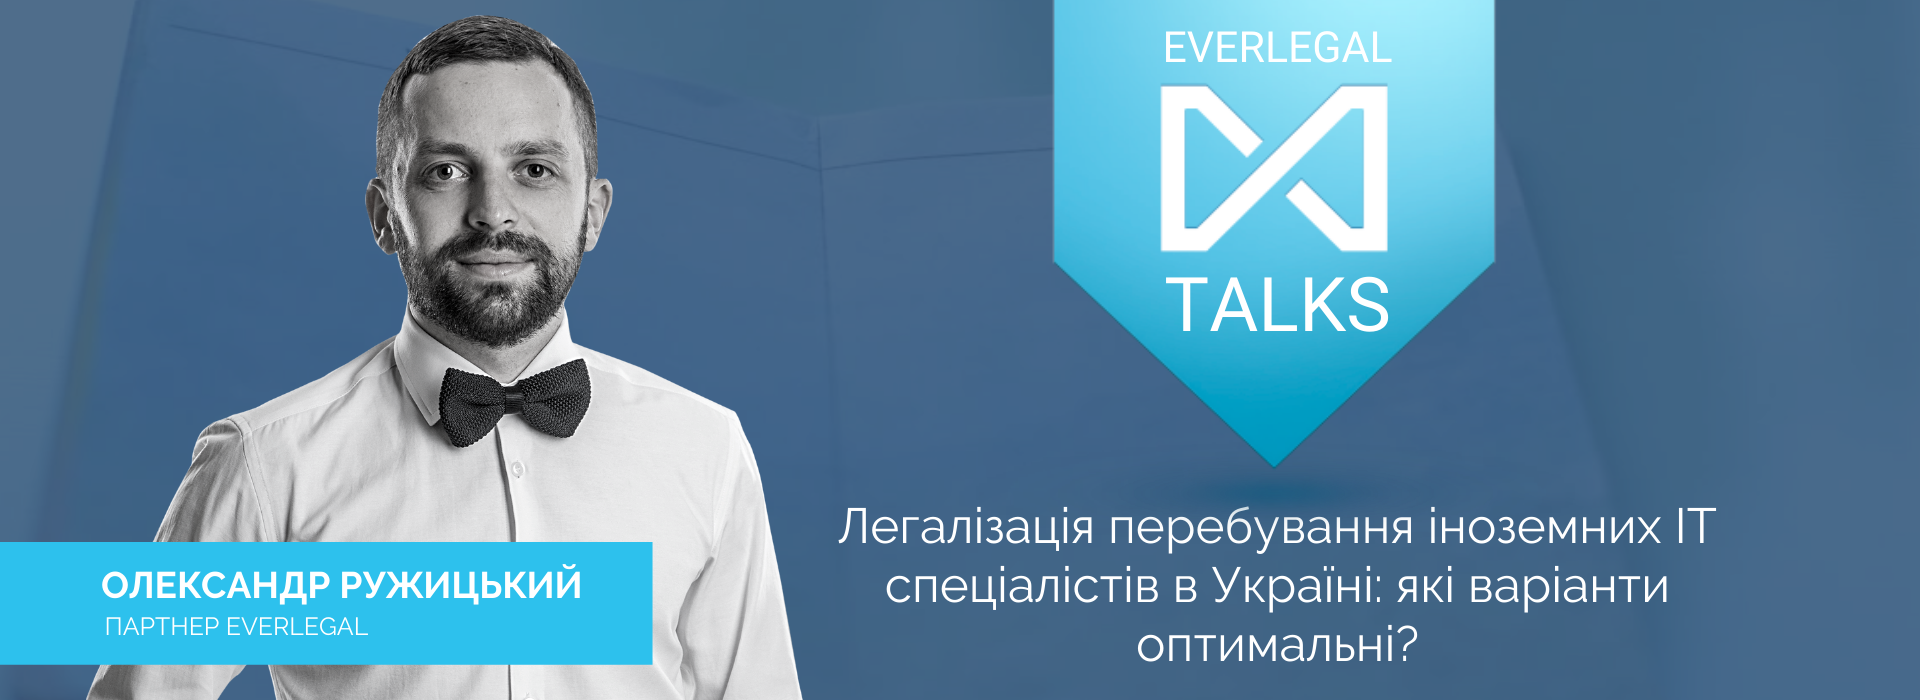 EverlegalTalks: Легалізація перебування іноземних ІТ спеціалістів в Україні